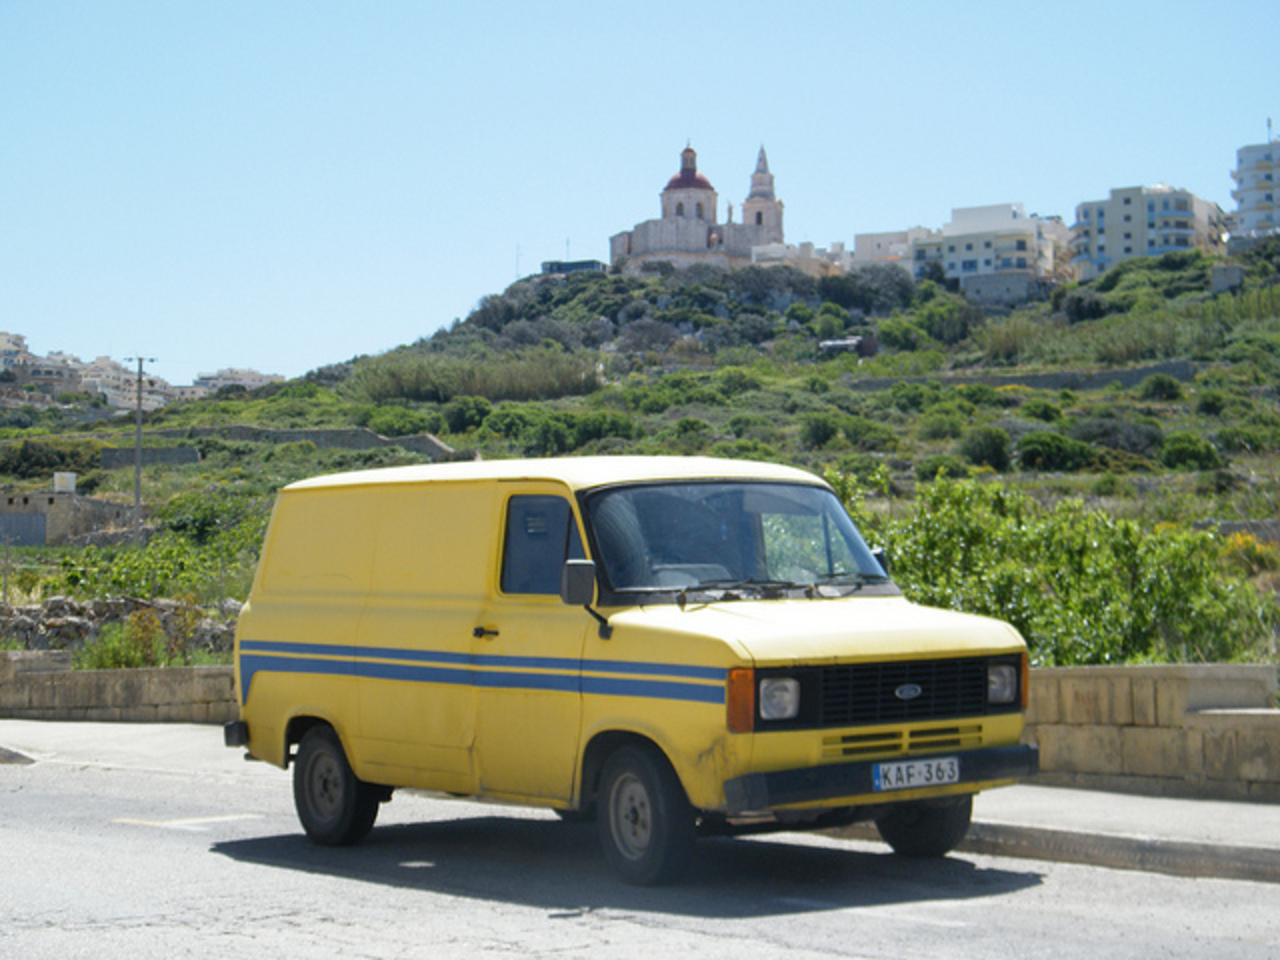 2012 - Malta transport - a set on Flickr